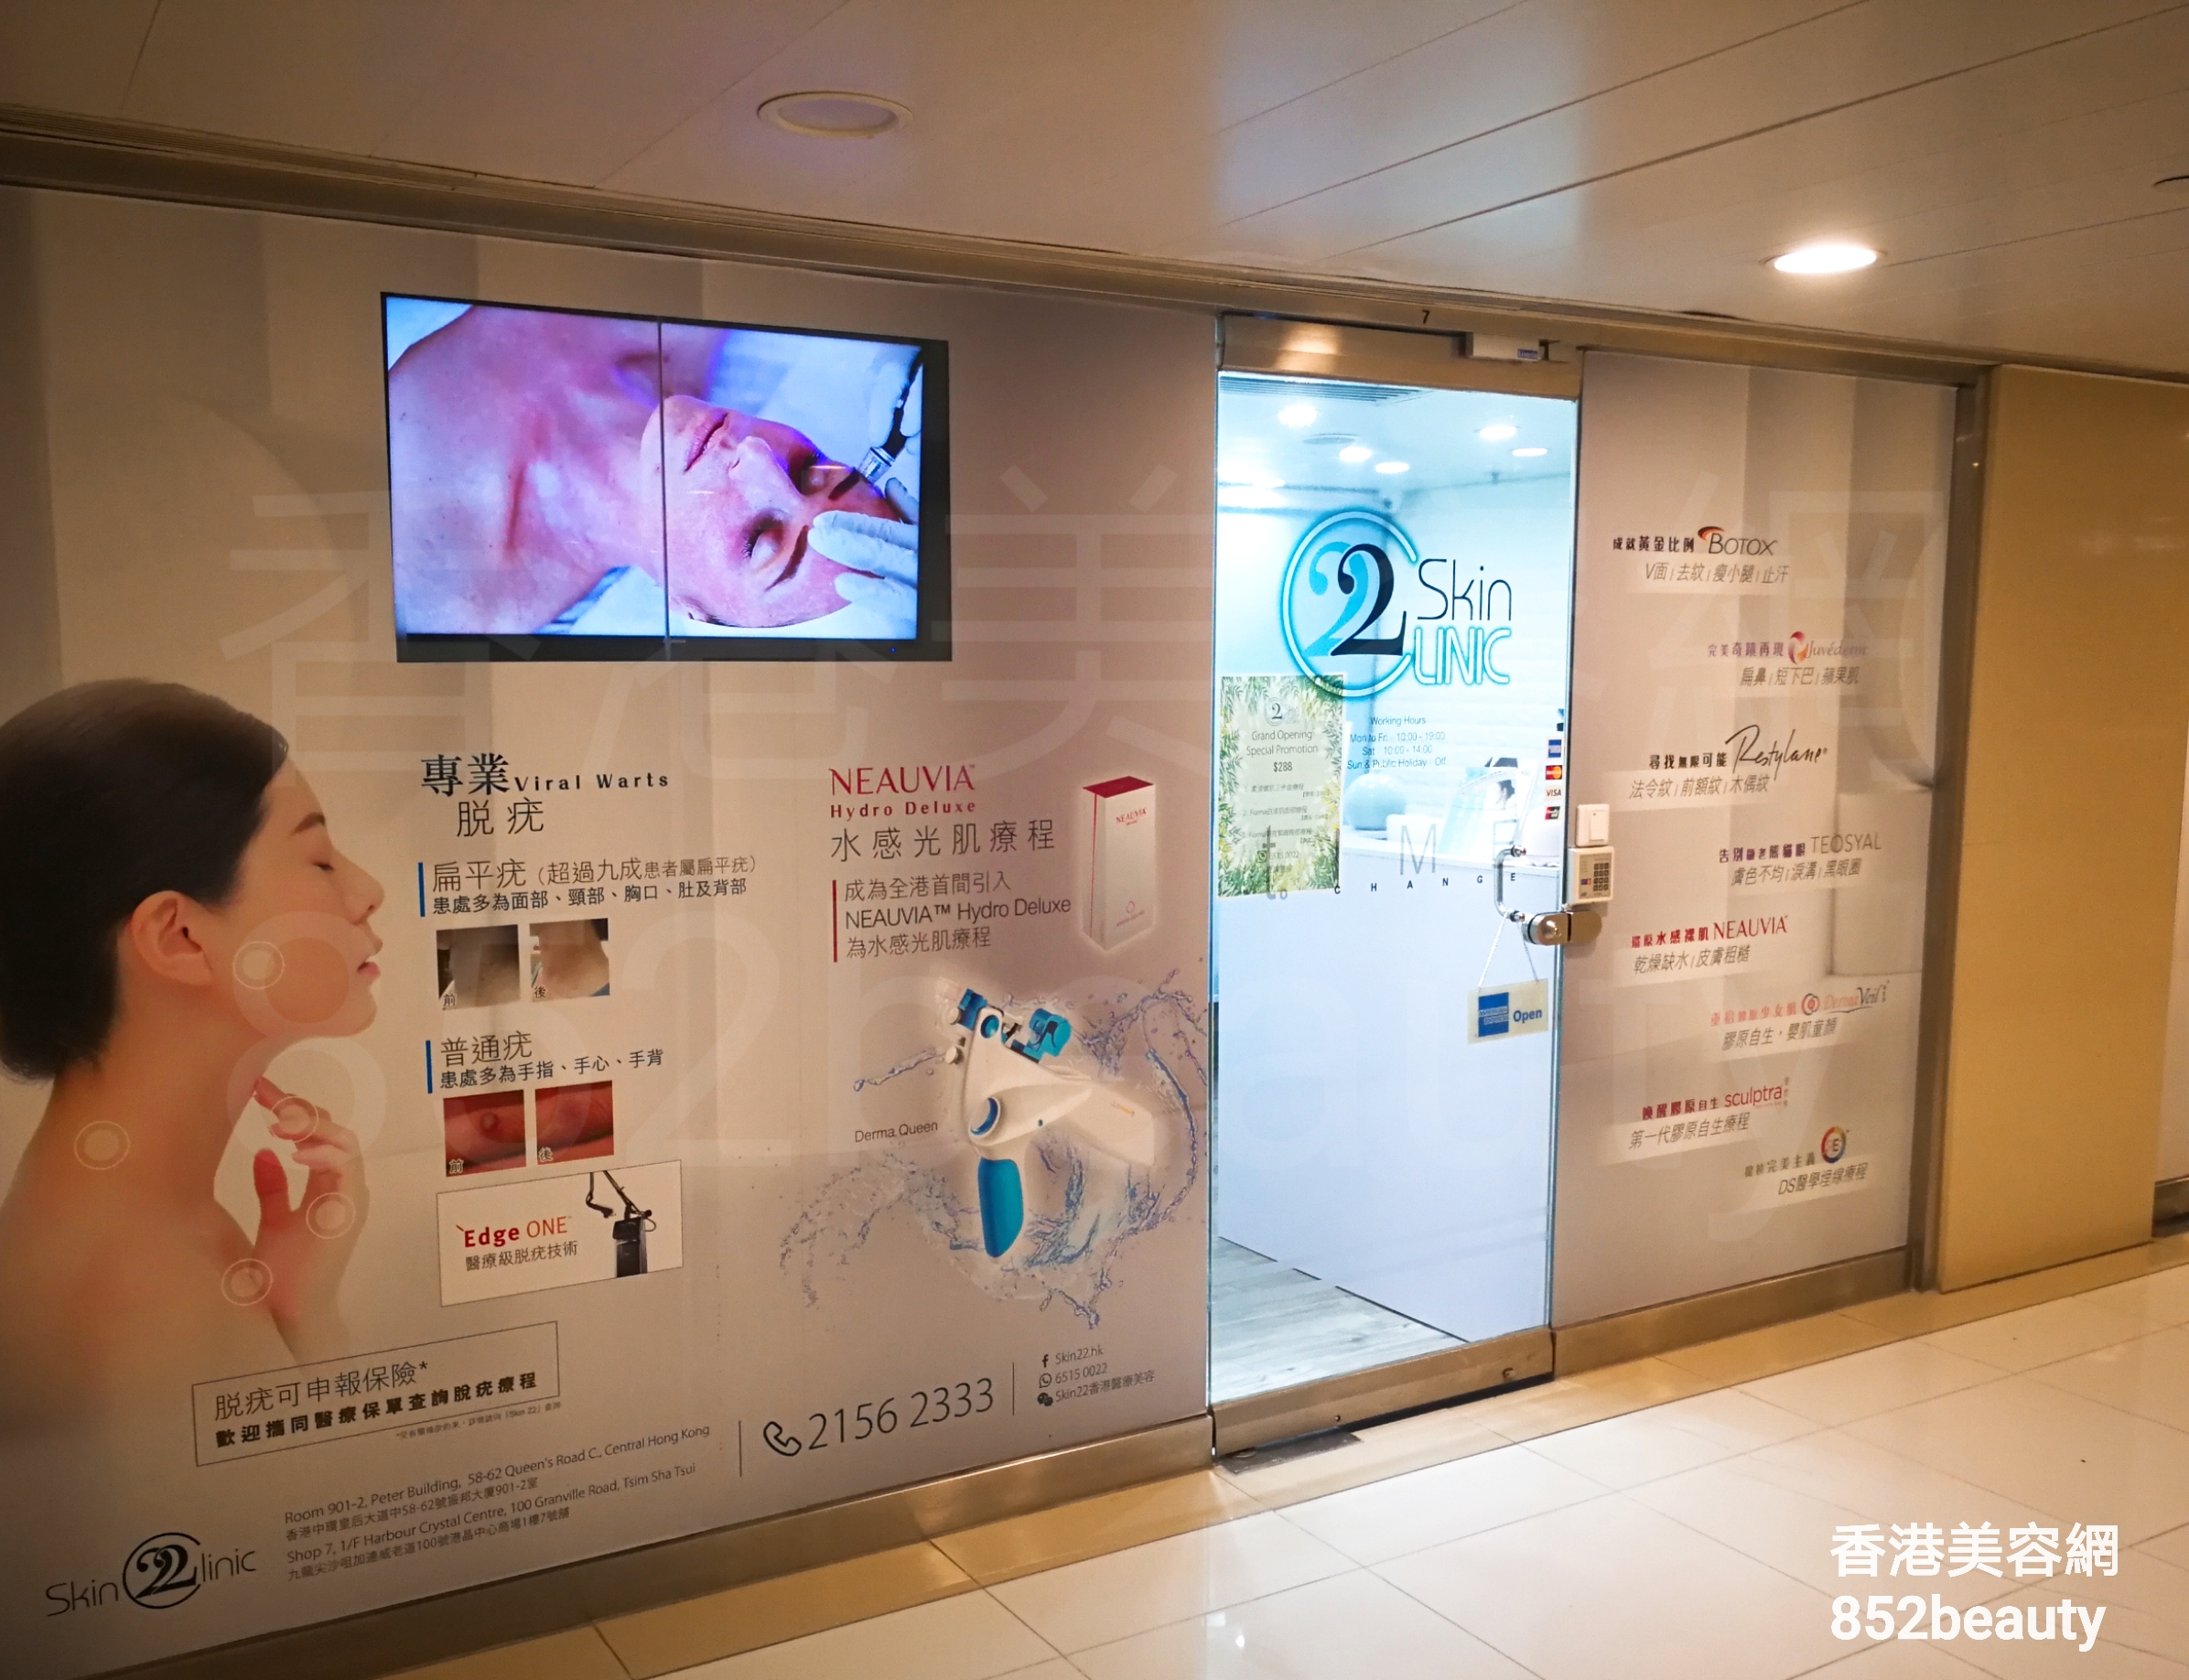 香港美容網 Hong Kong Beauty Salon 美容院 / 美容師: SKIN 22 (尖沙咀店)